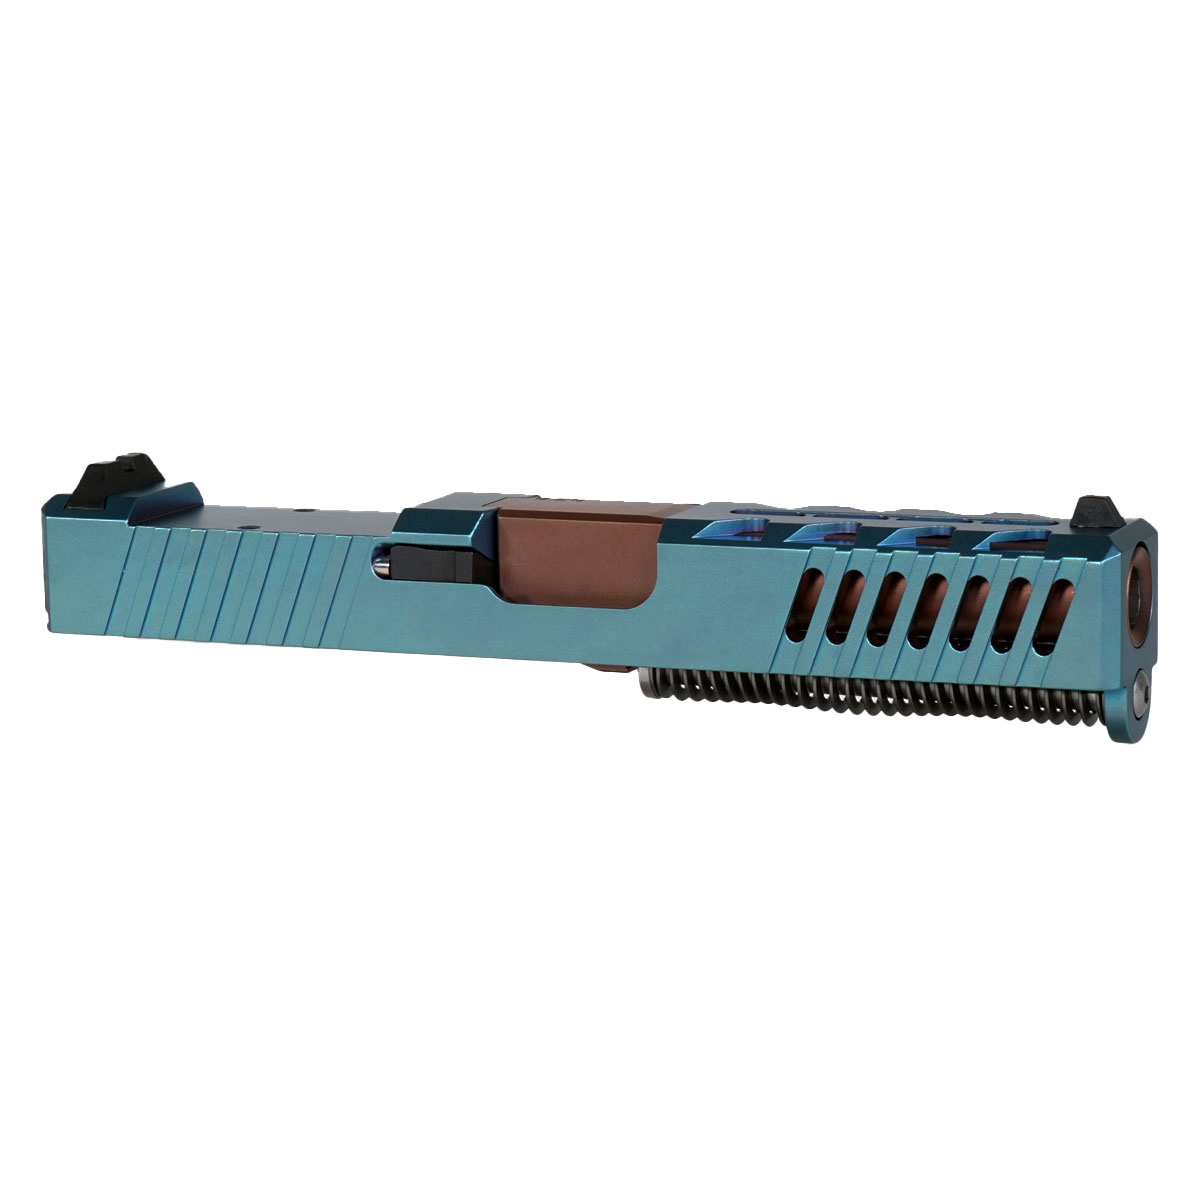 DTT 'Stormbringer' 9mm Complete Slide Kit - Glock 19 Gen 1-3 Compatible